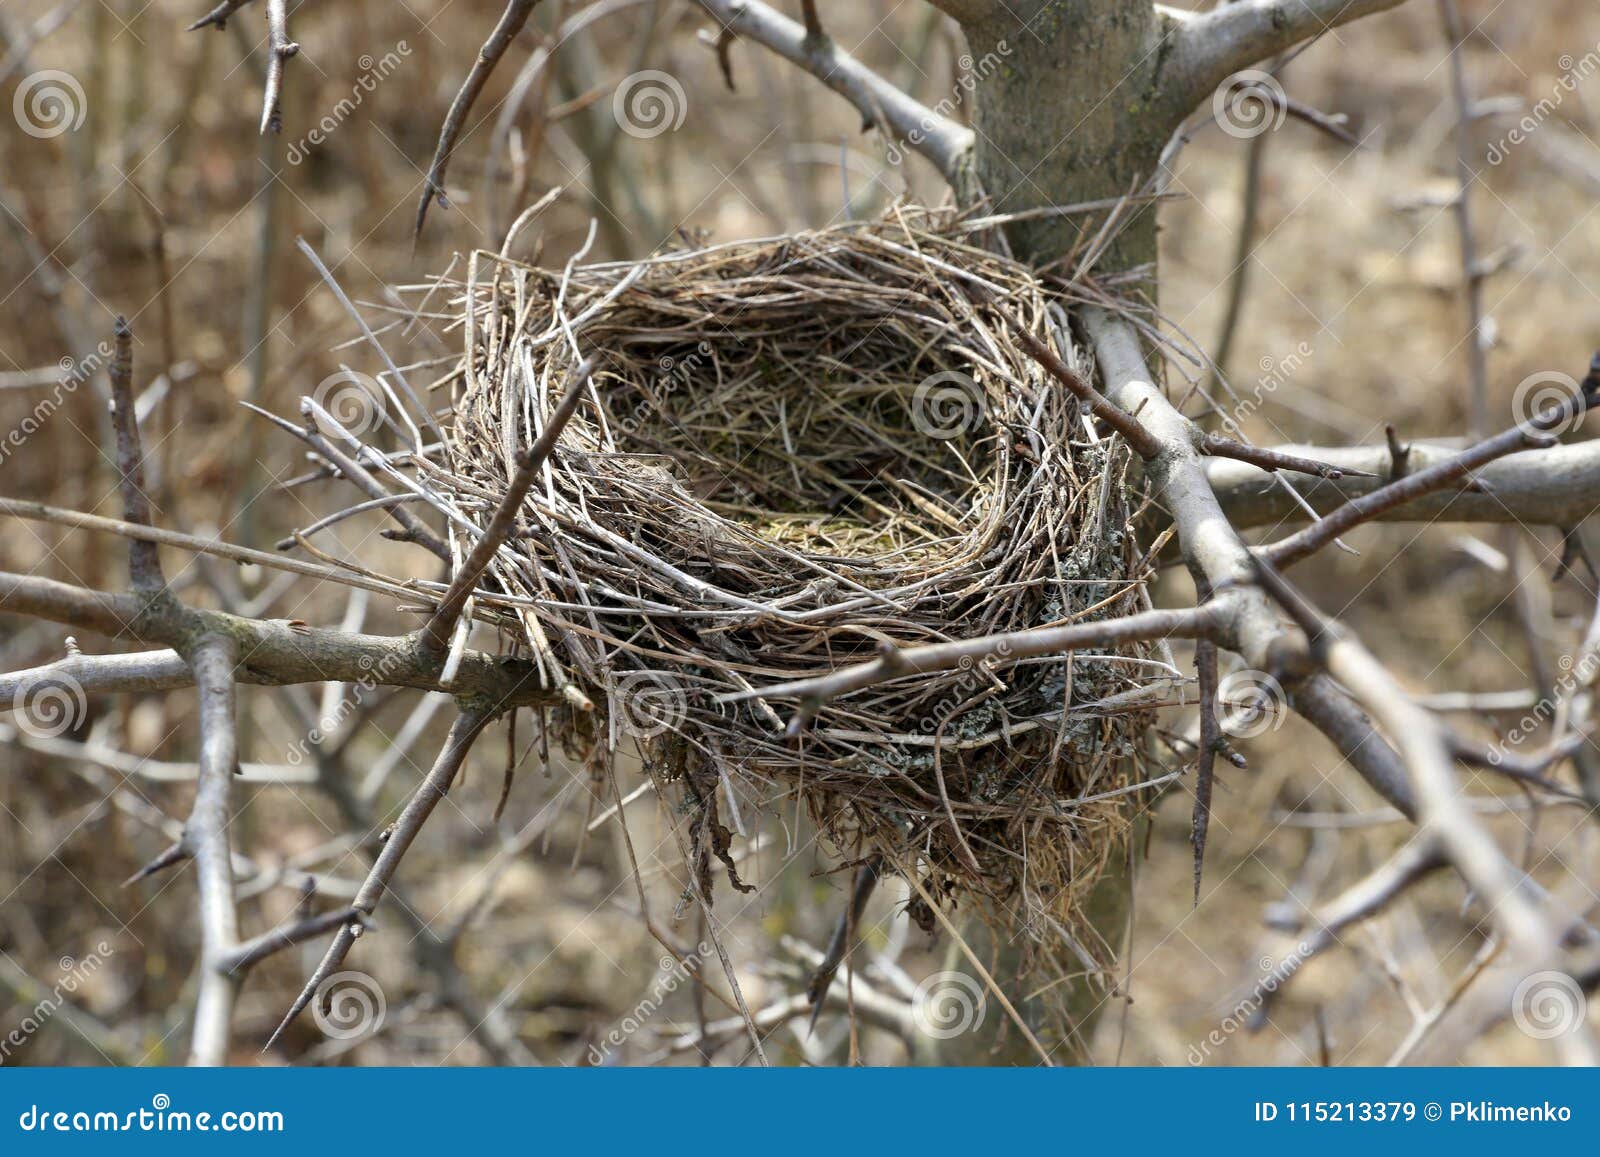 Гнездо для птиц 10*10*20см SD201847